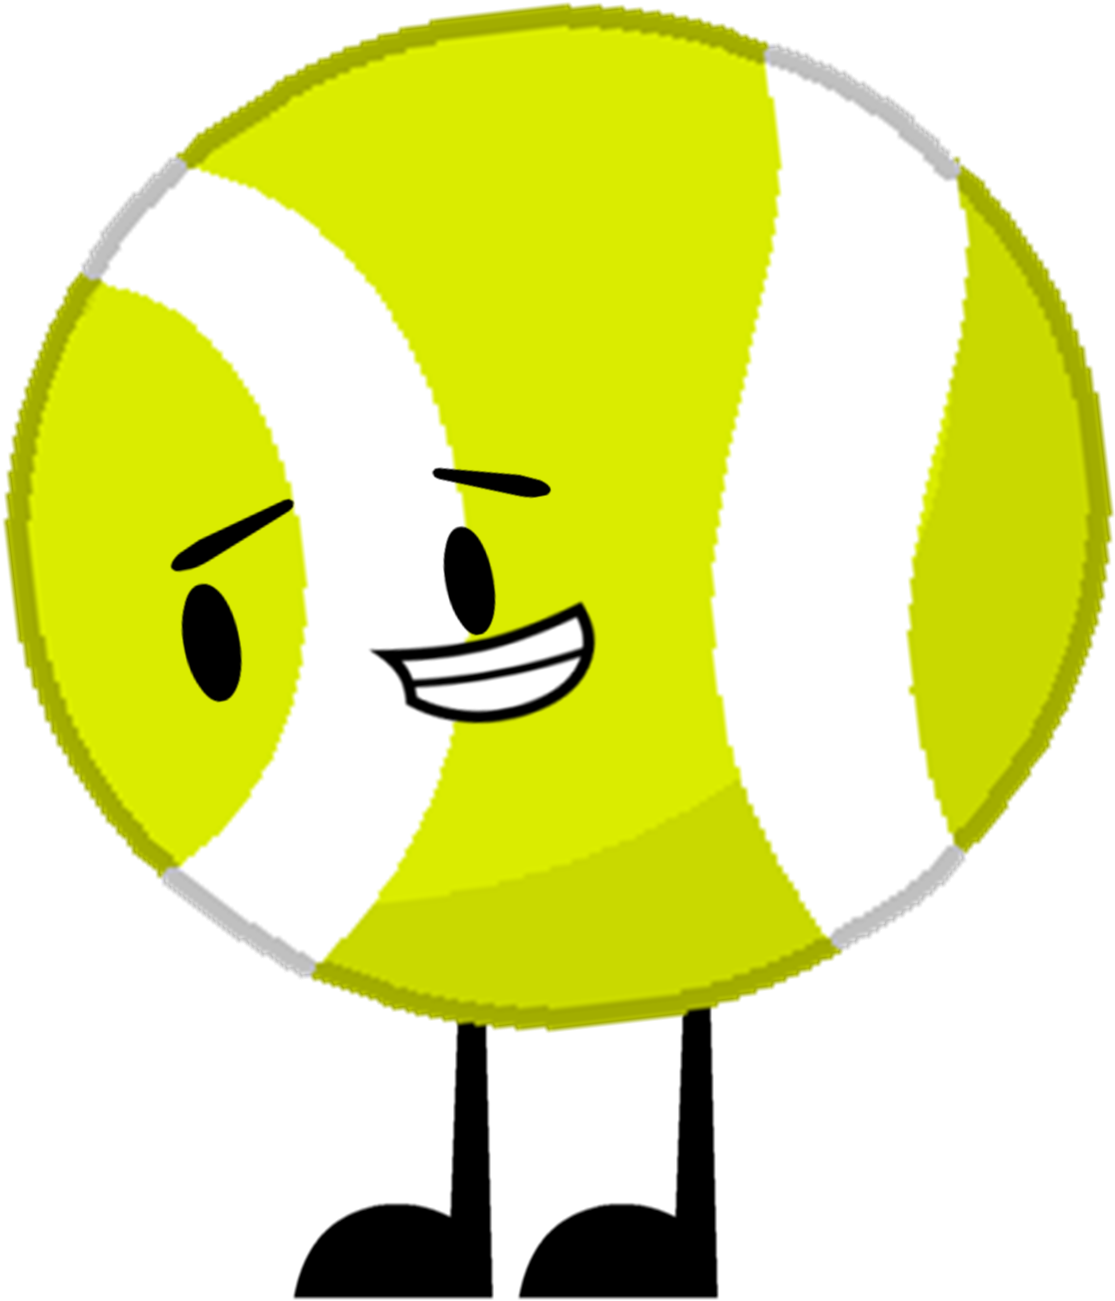 Tennis Ball-1 - Tennis Ball (1266x1377)